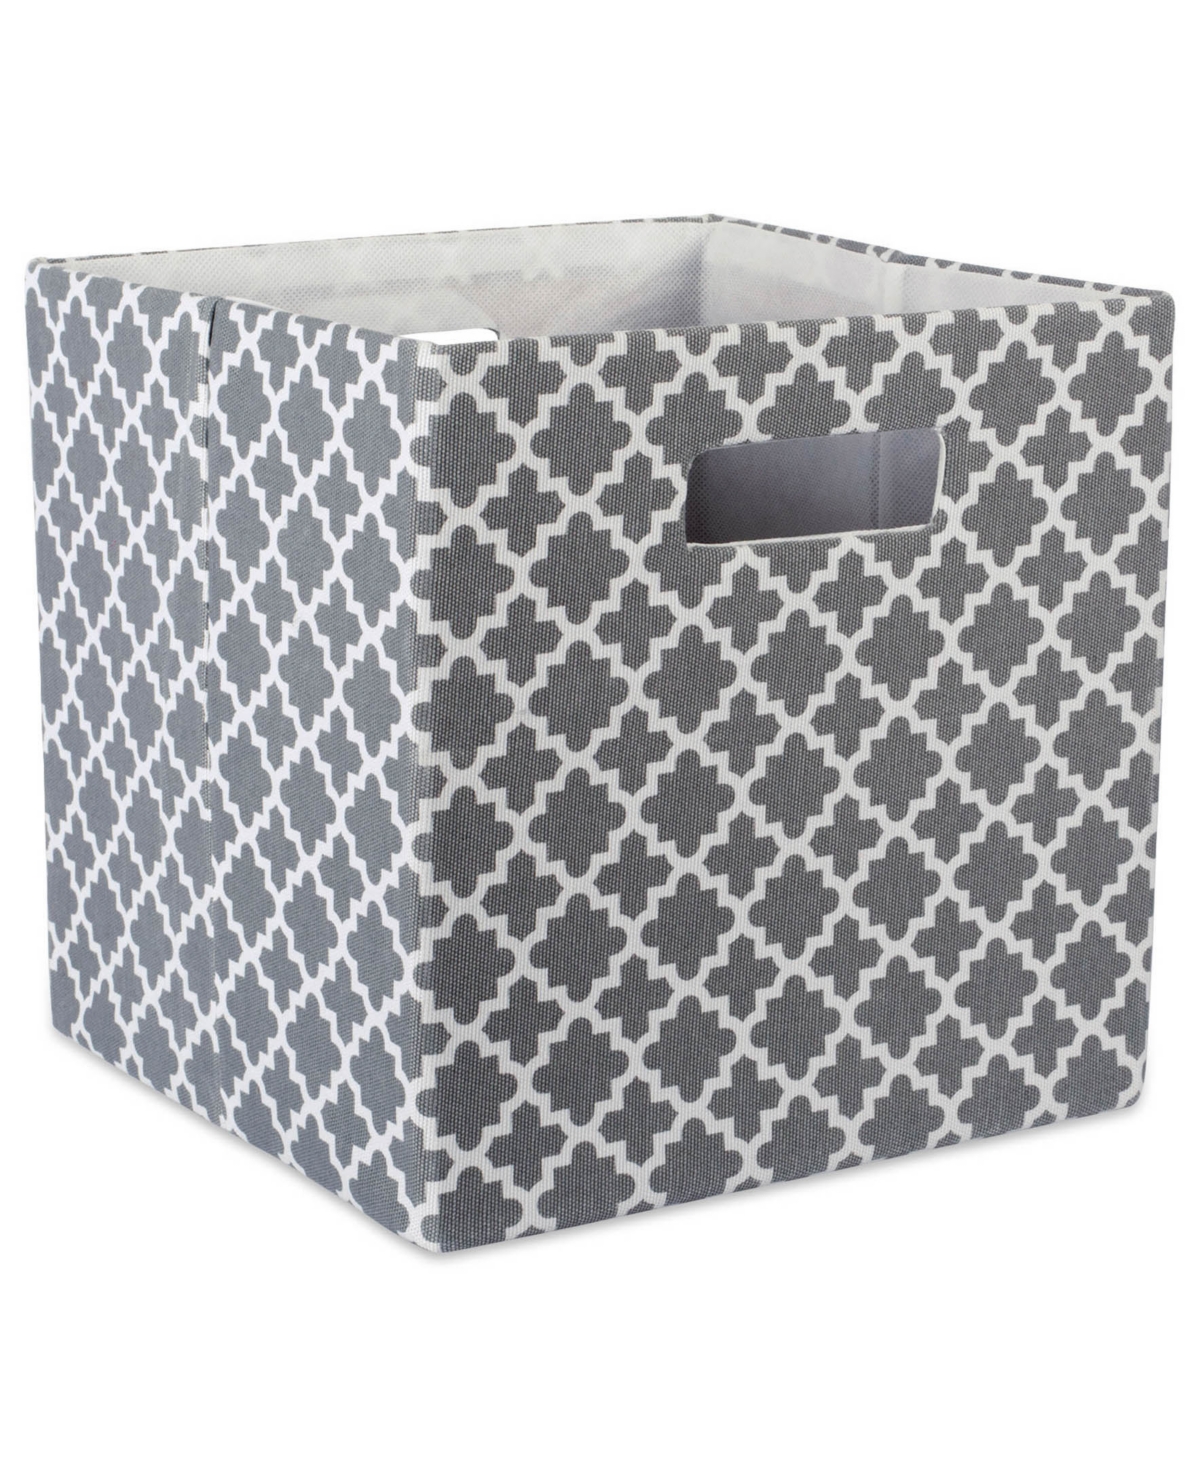 Design Imports Square Lattice Print Polyester Storage Bin In Gray